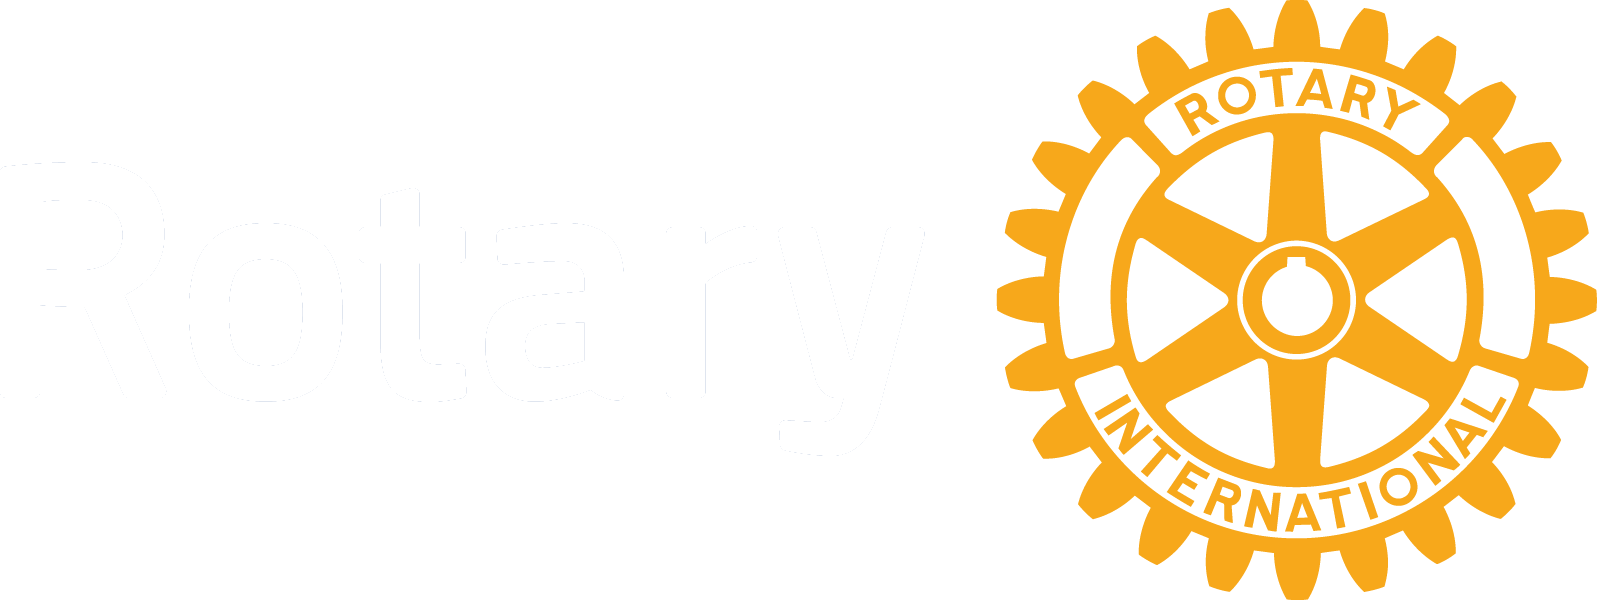 District 2410 logo